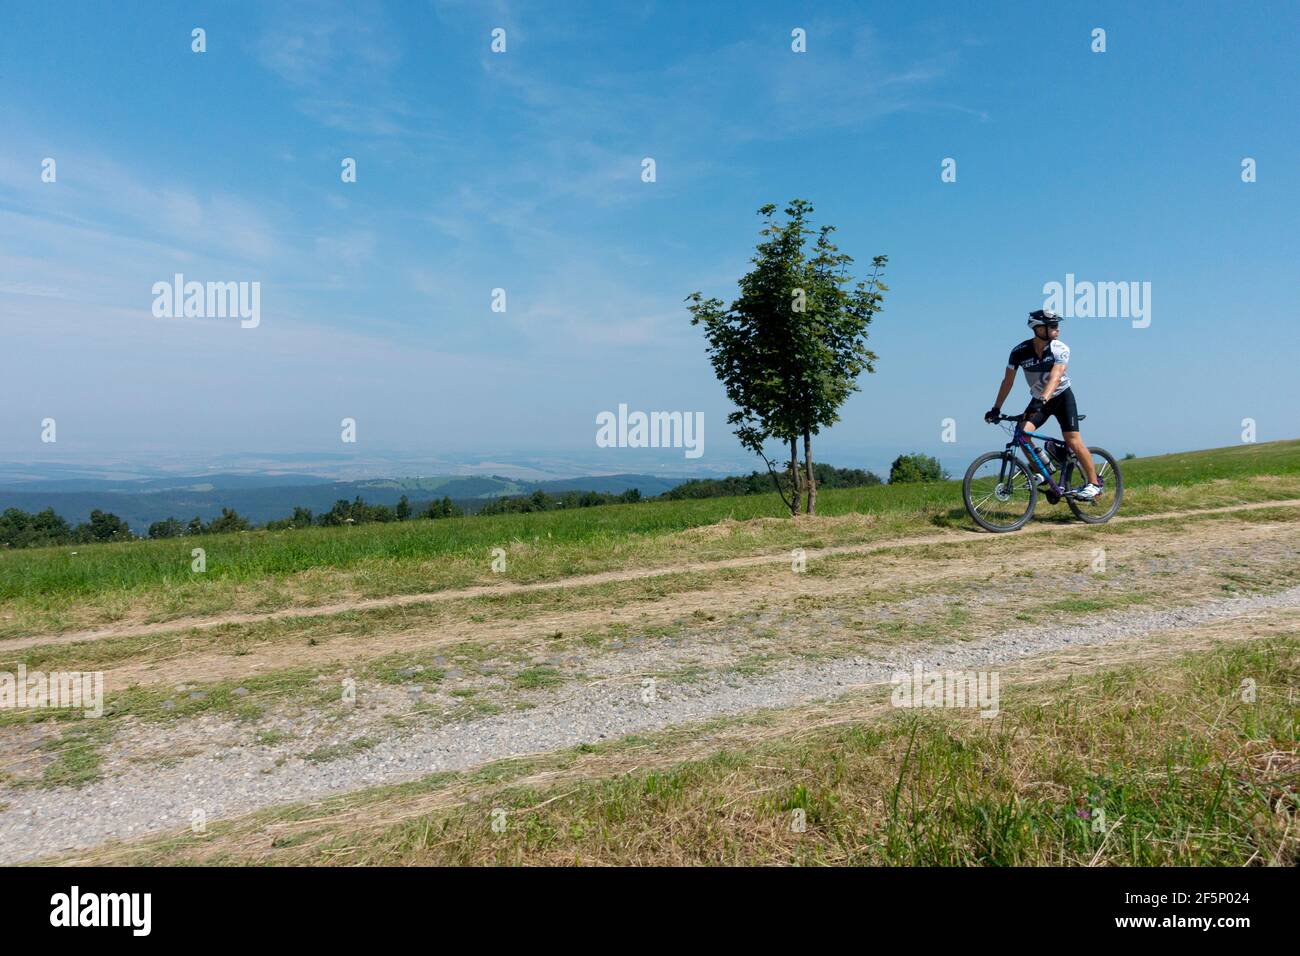 Un homme à vélo seul sur une route de campagne dans la campagne avec un petit arbre au bord de la route, style de vie dans une belle journée, motard Banque D'Images